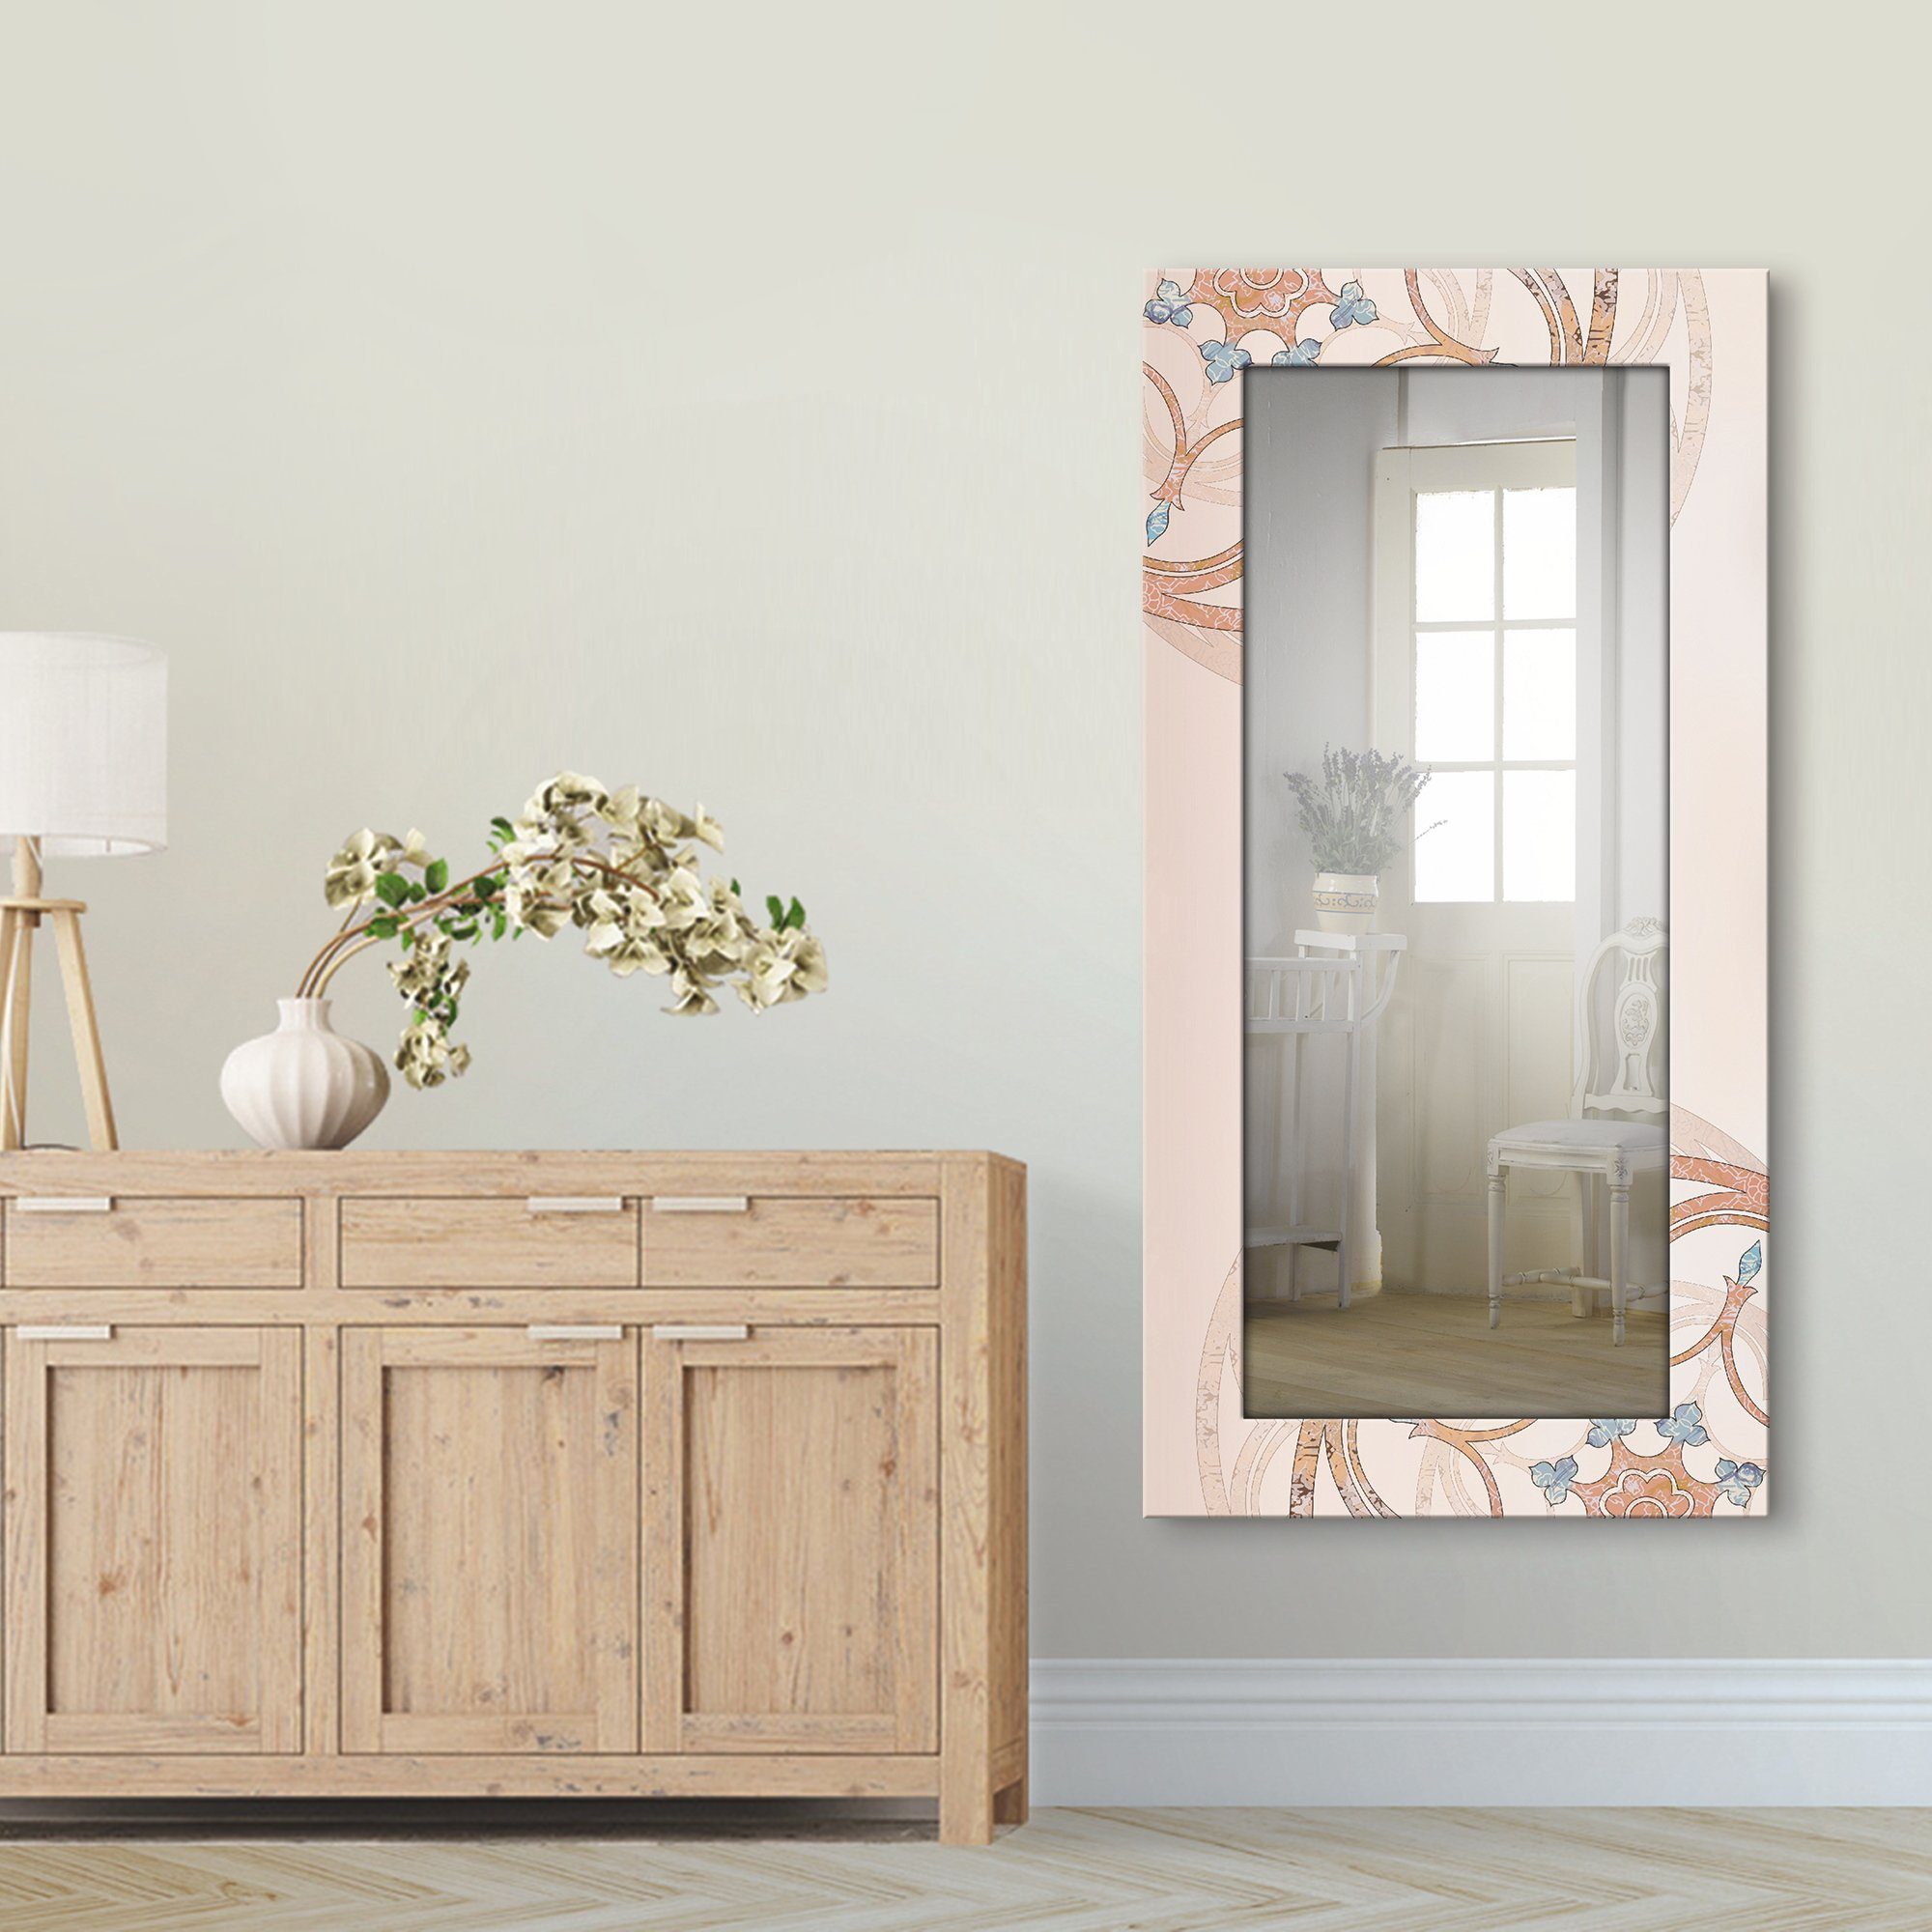 Artland Sierspiegel Boho mandala ingelijste spiegel voor het hele lichaam met motiefrand, geschikt voor kleine, smalle hal, halspiegel, mirror spiegel omrand om op te hangen